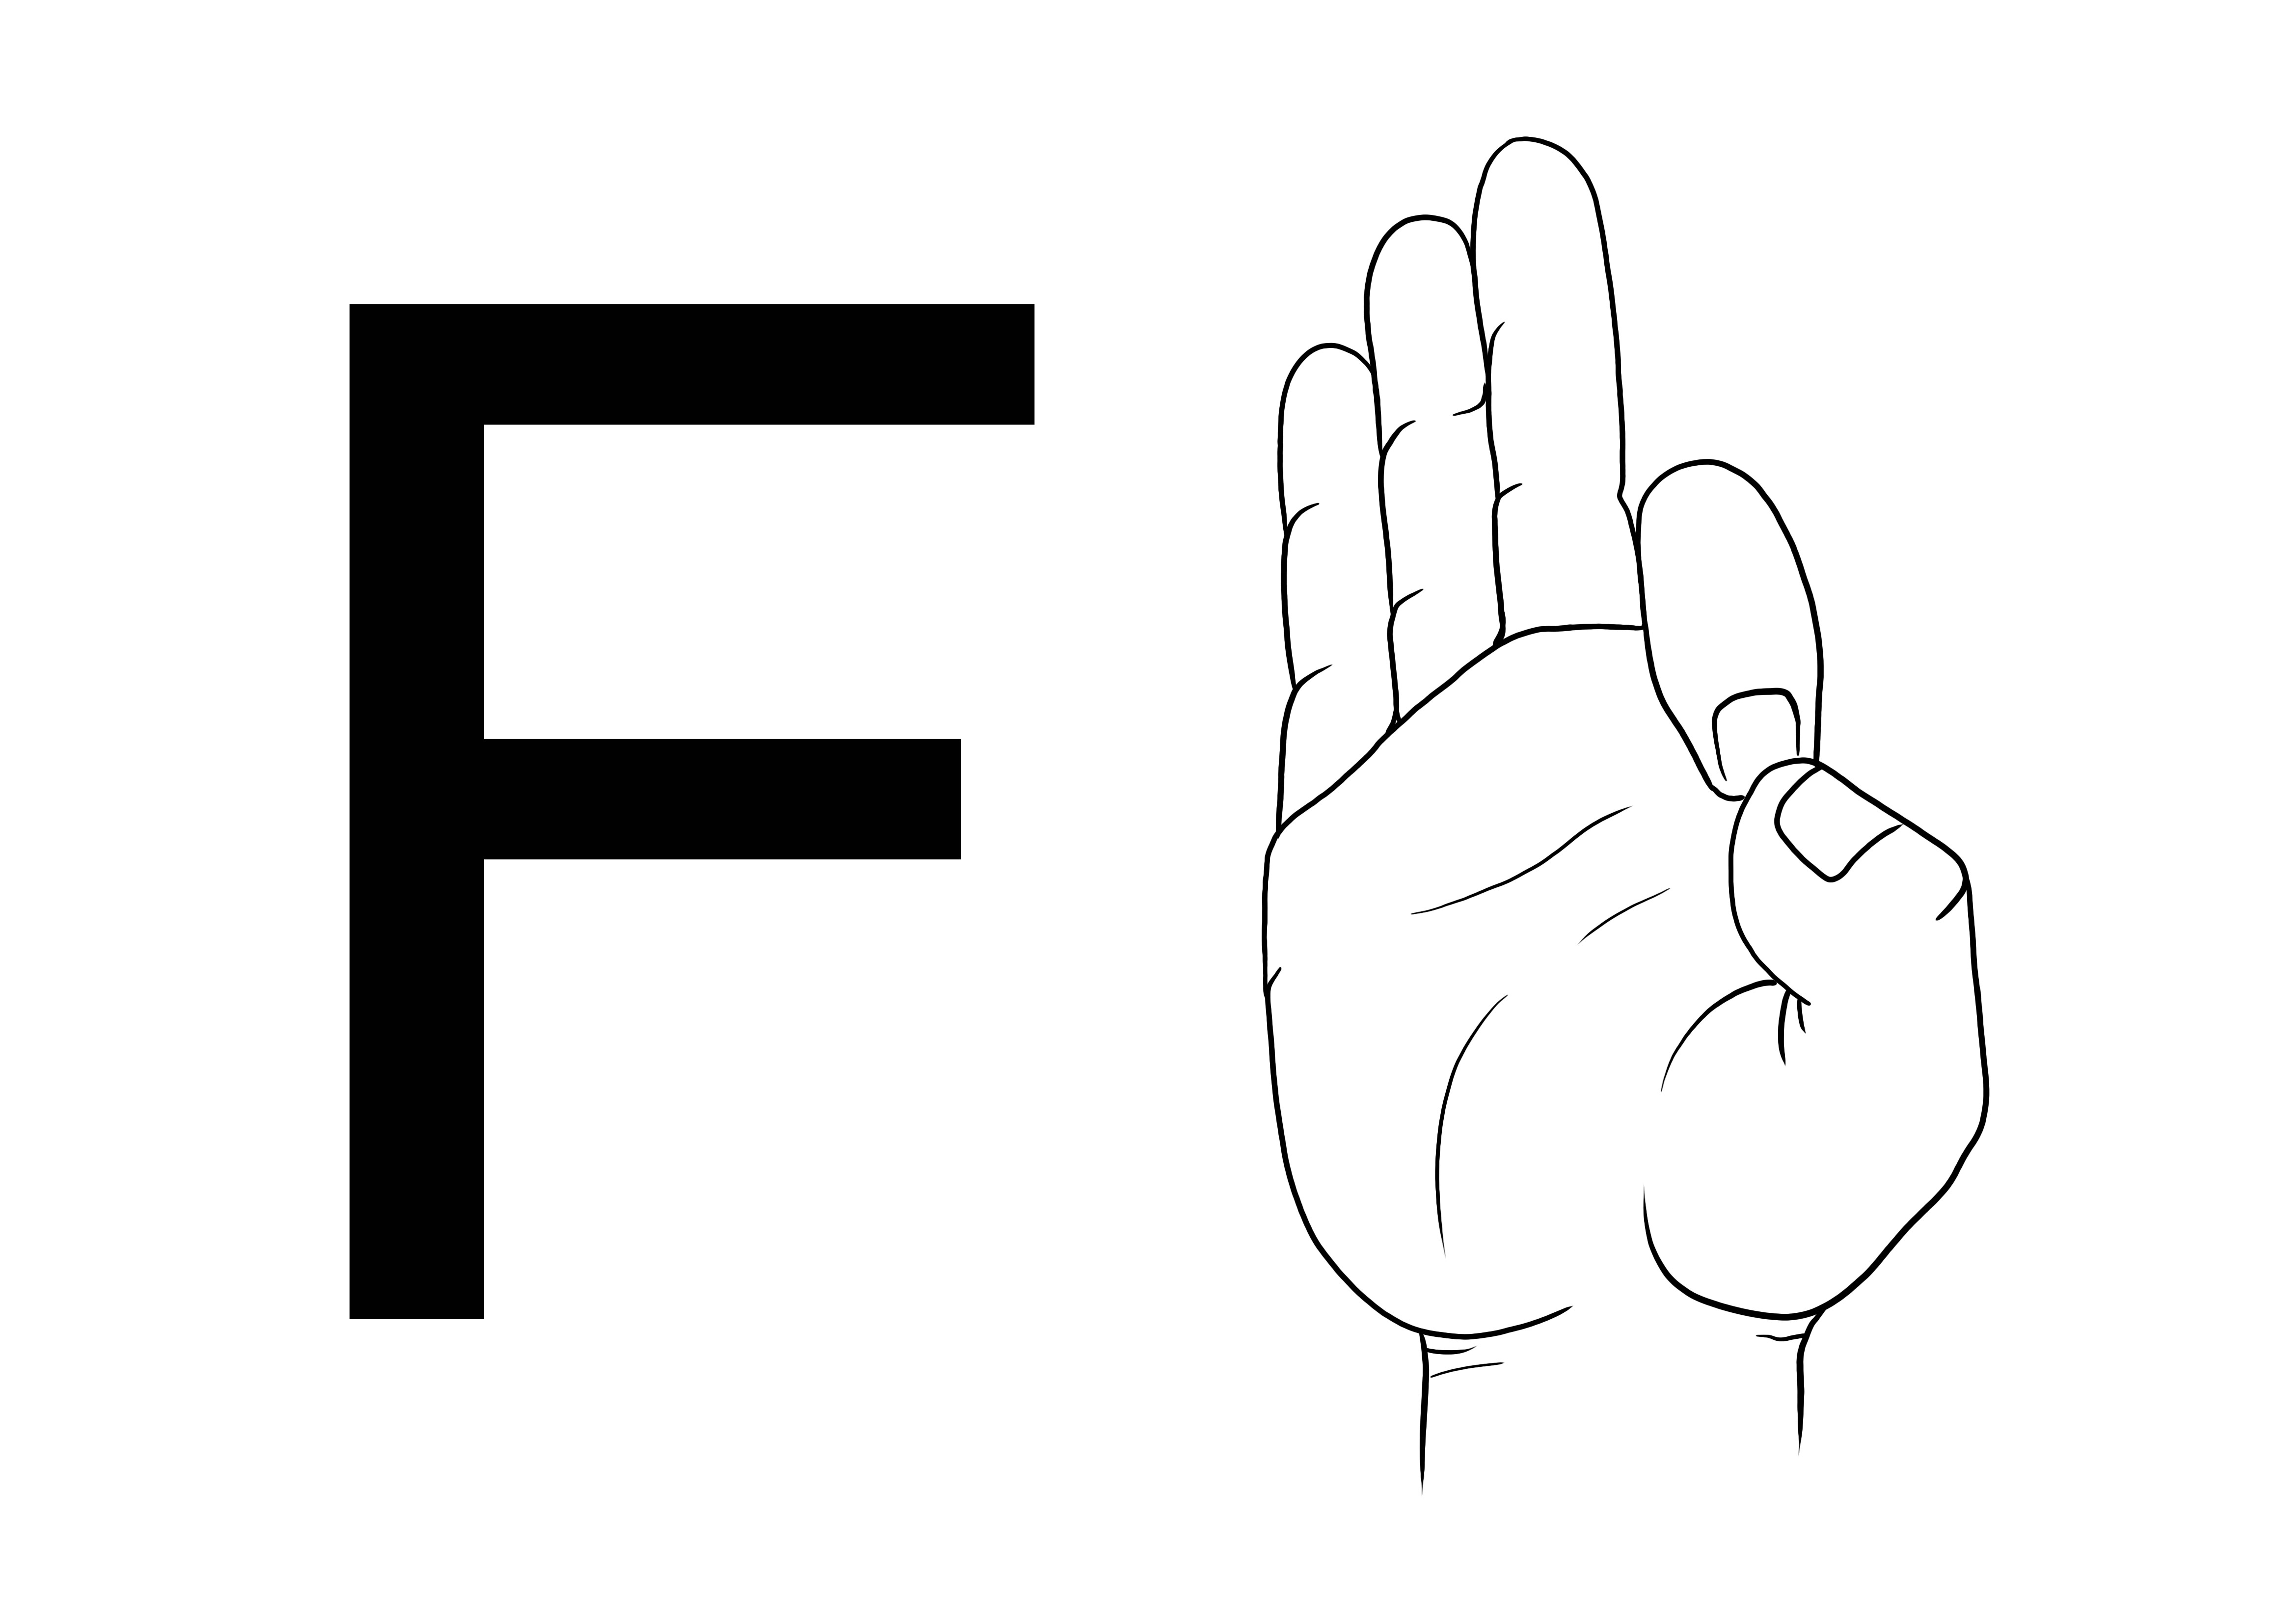 Helppo ASL-viittomakielen F-kirjain tulostamiseen ilmaisen ja yksinkertaisen väritysarkin saamiseksi